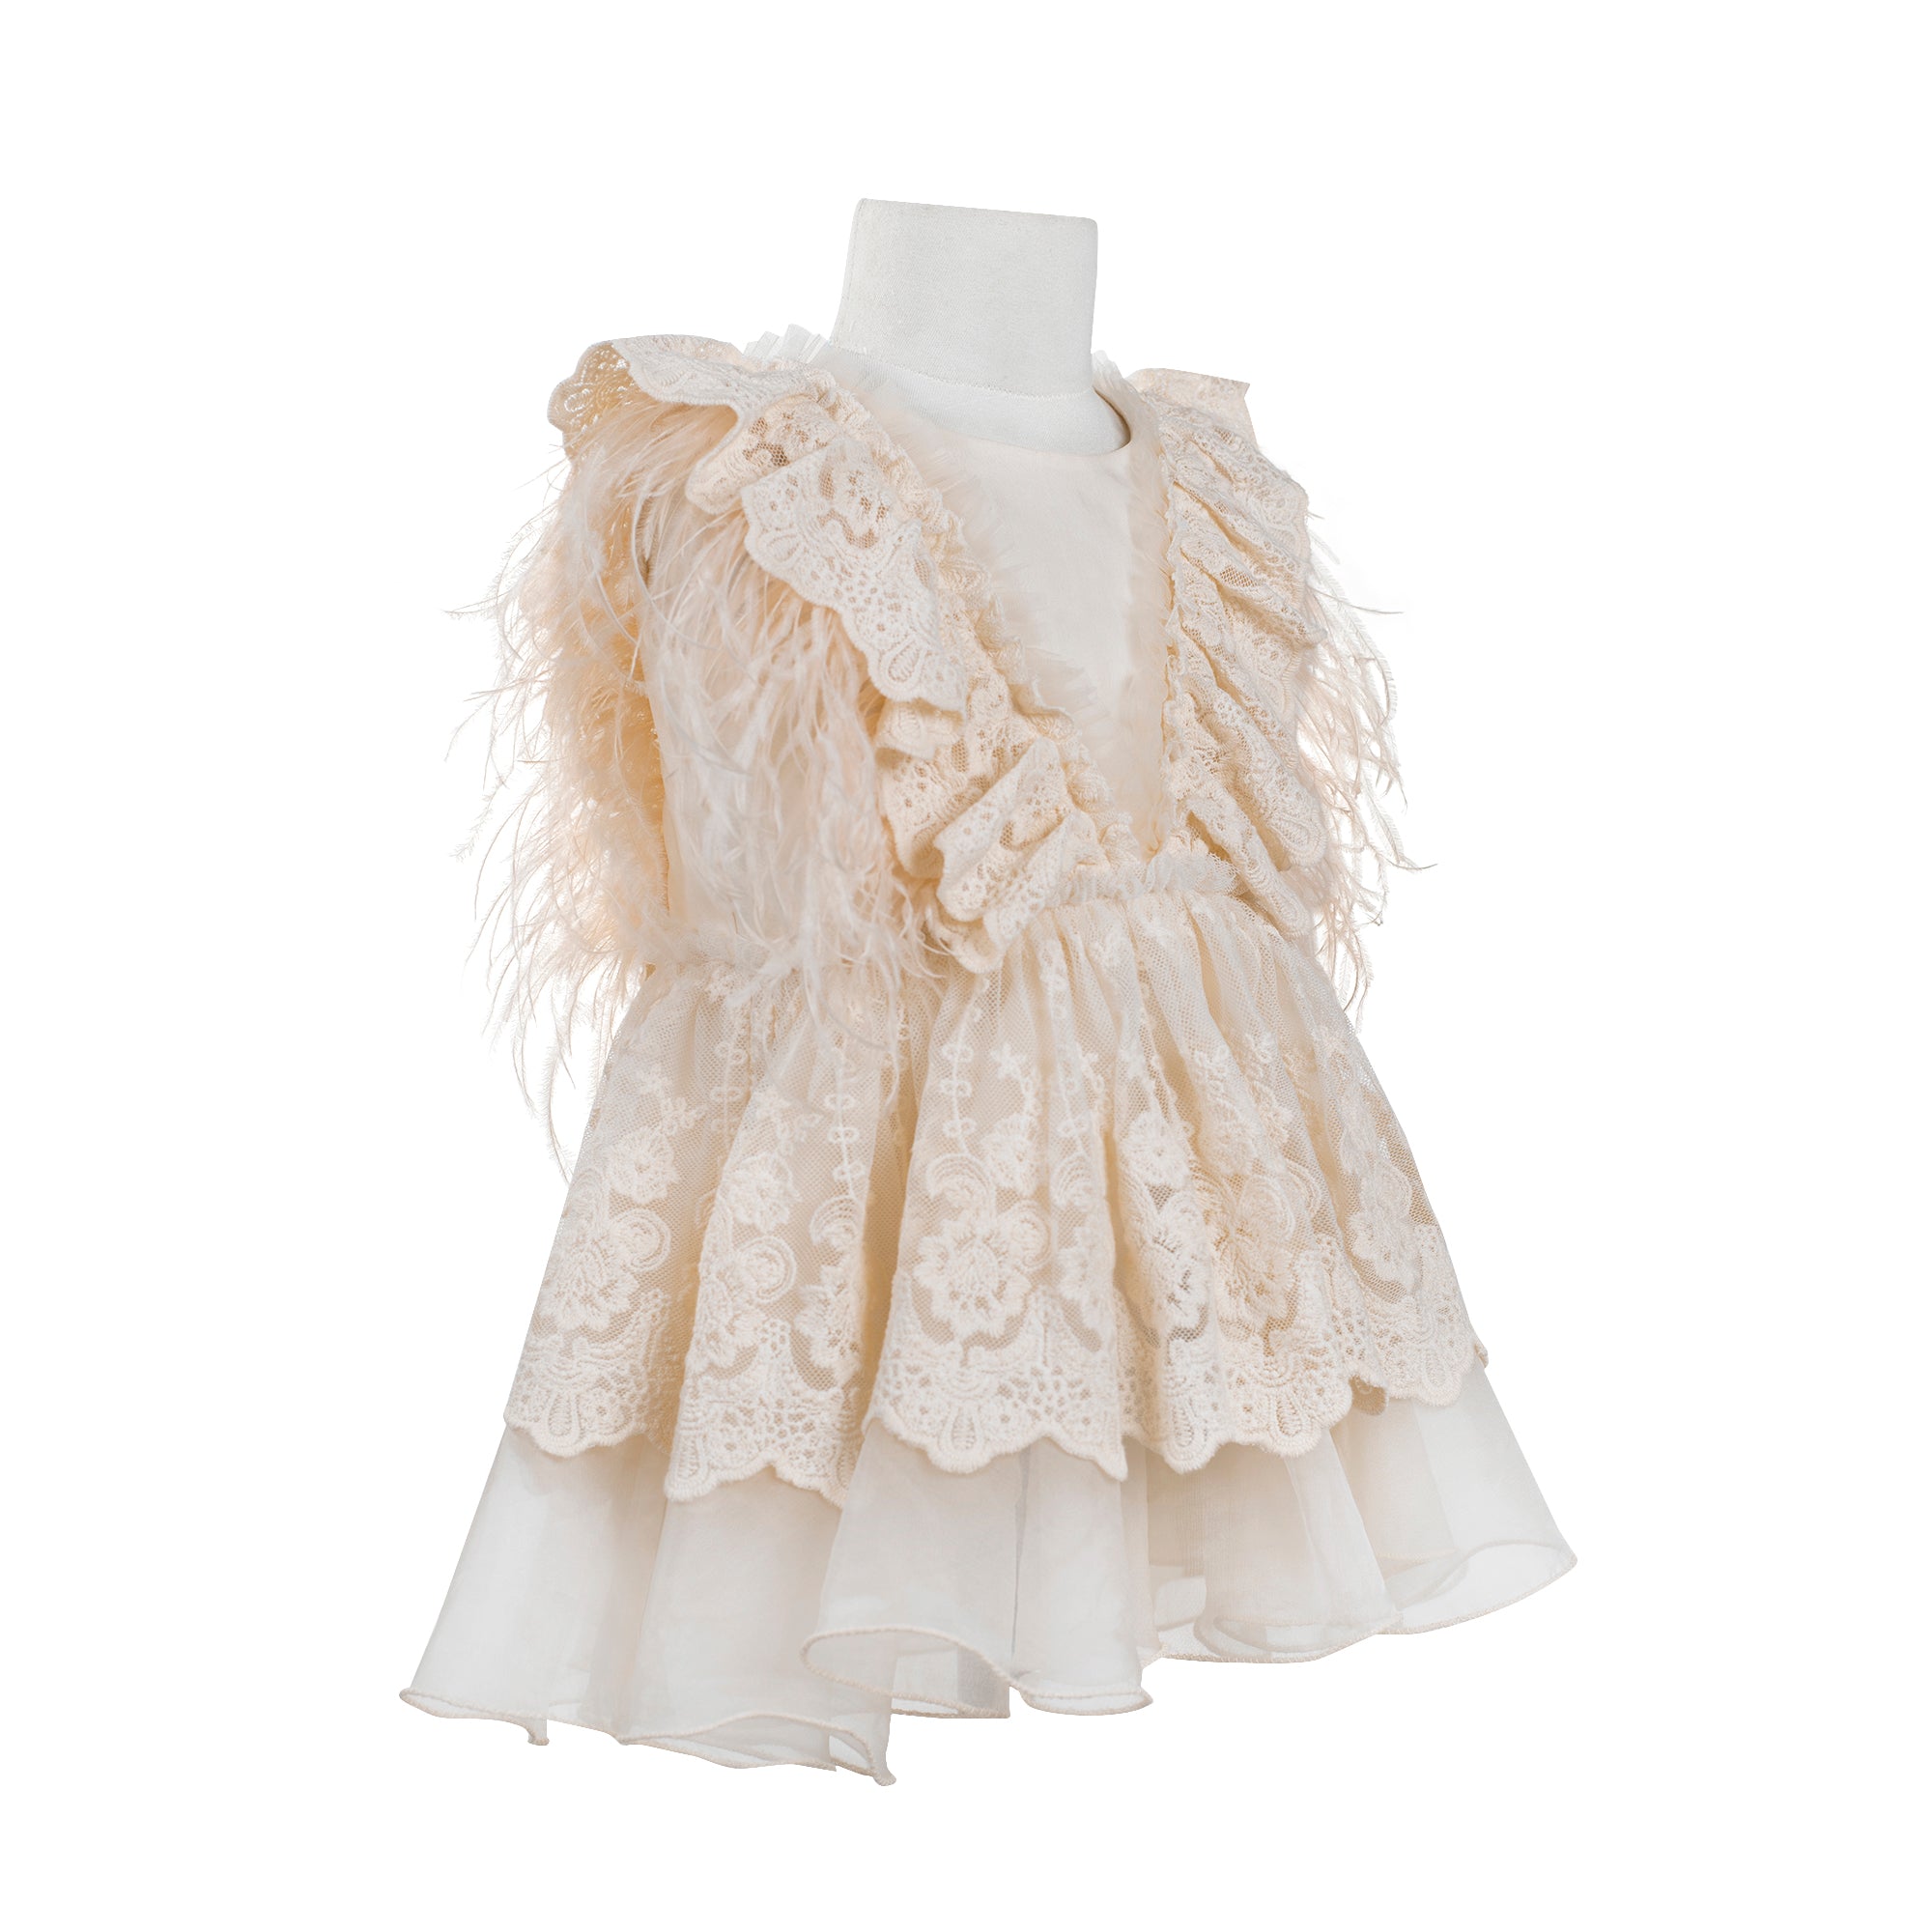 The Feather Fairy Dress (Peach)